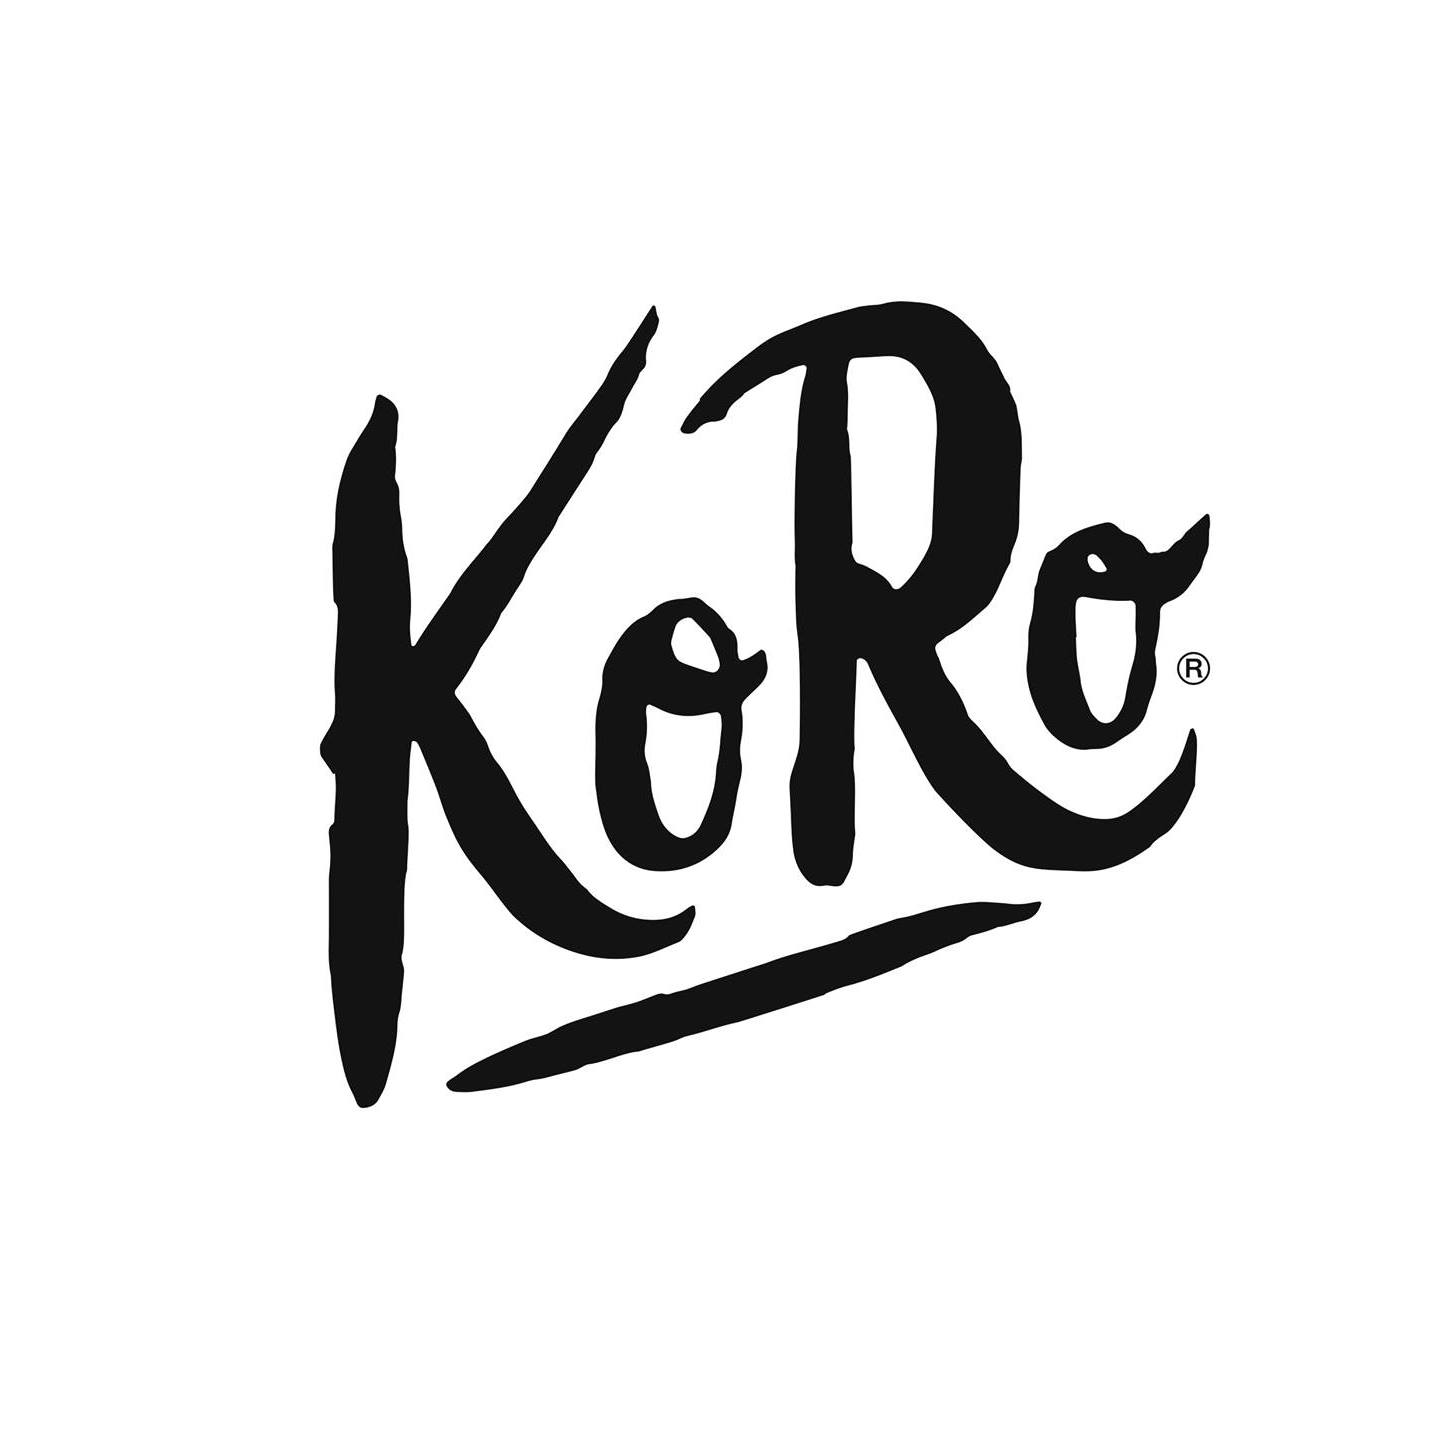 KoRo Raises €50M in Funding